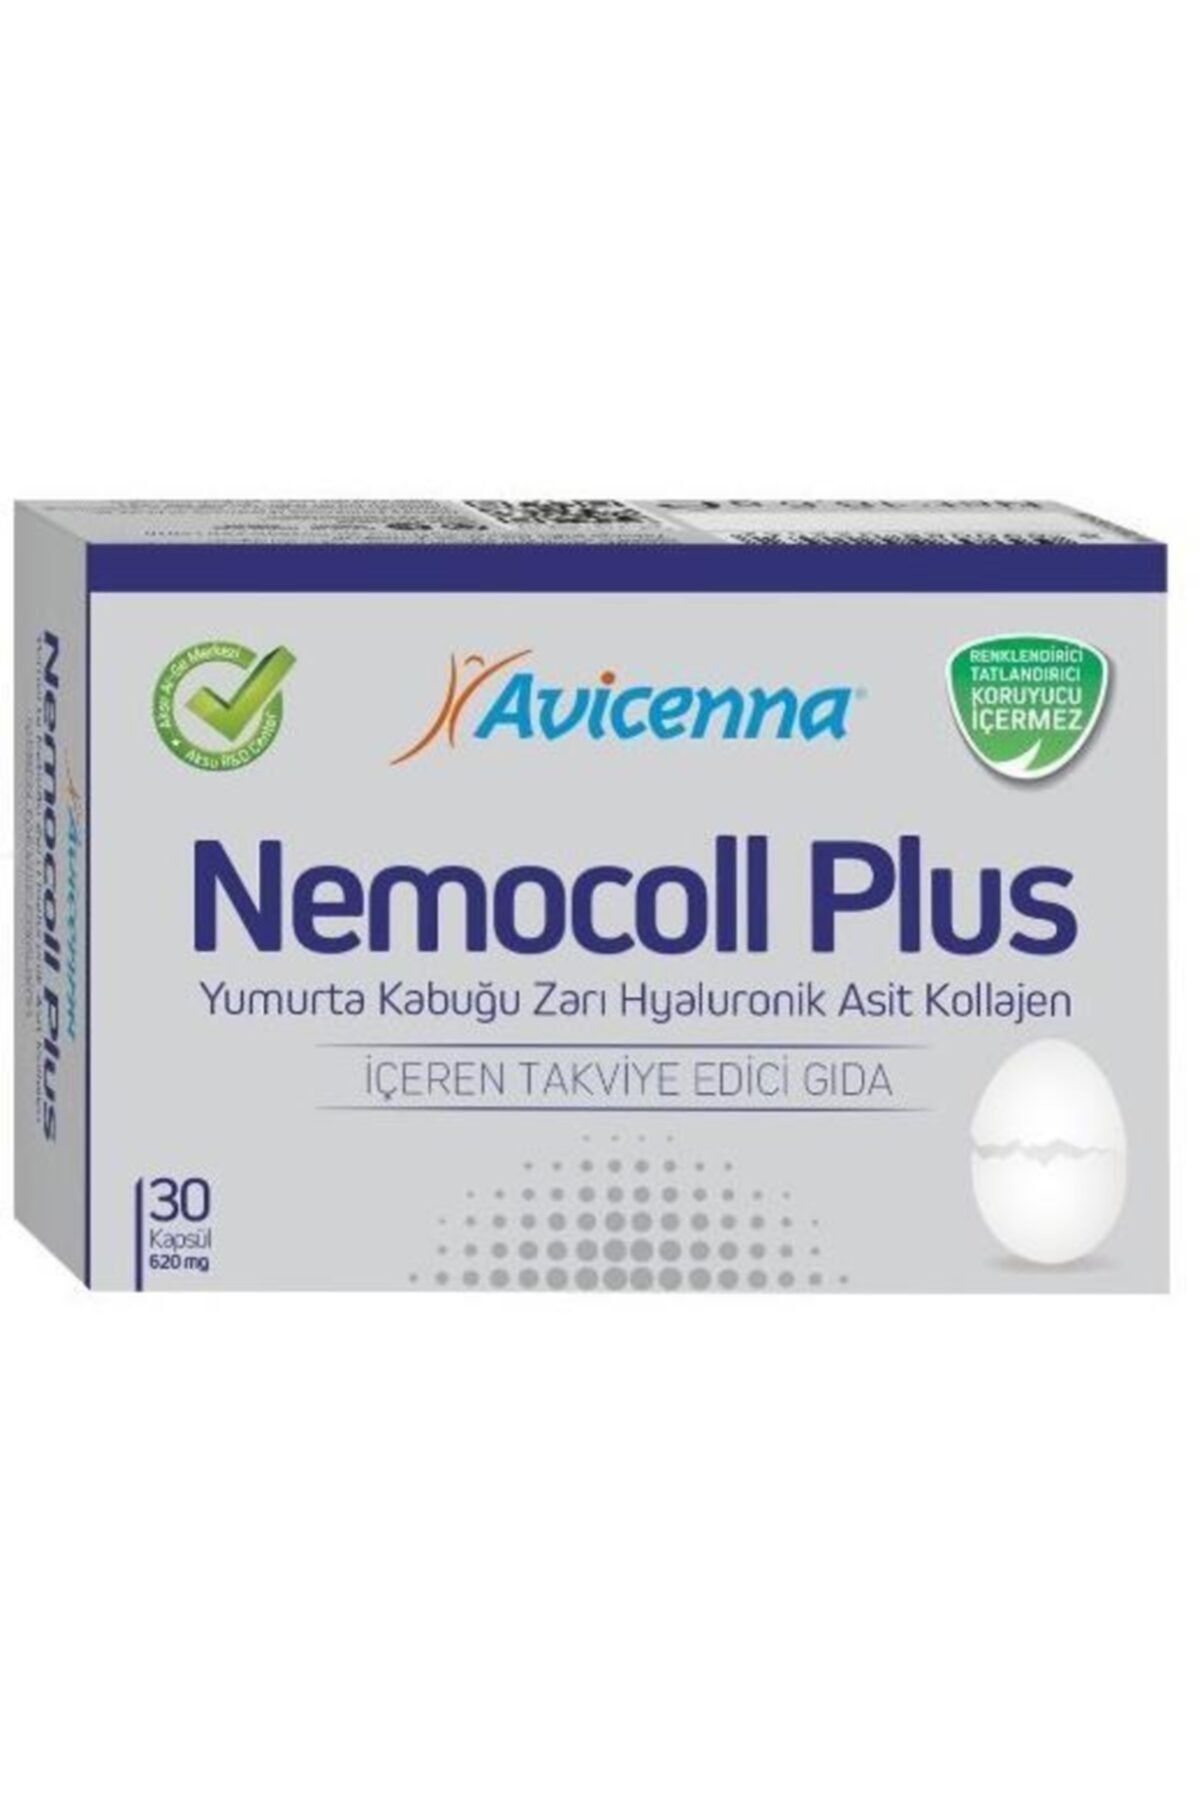 Avicenna Avıcenna Nemocoll Plus 30 Kapsül